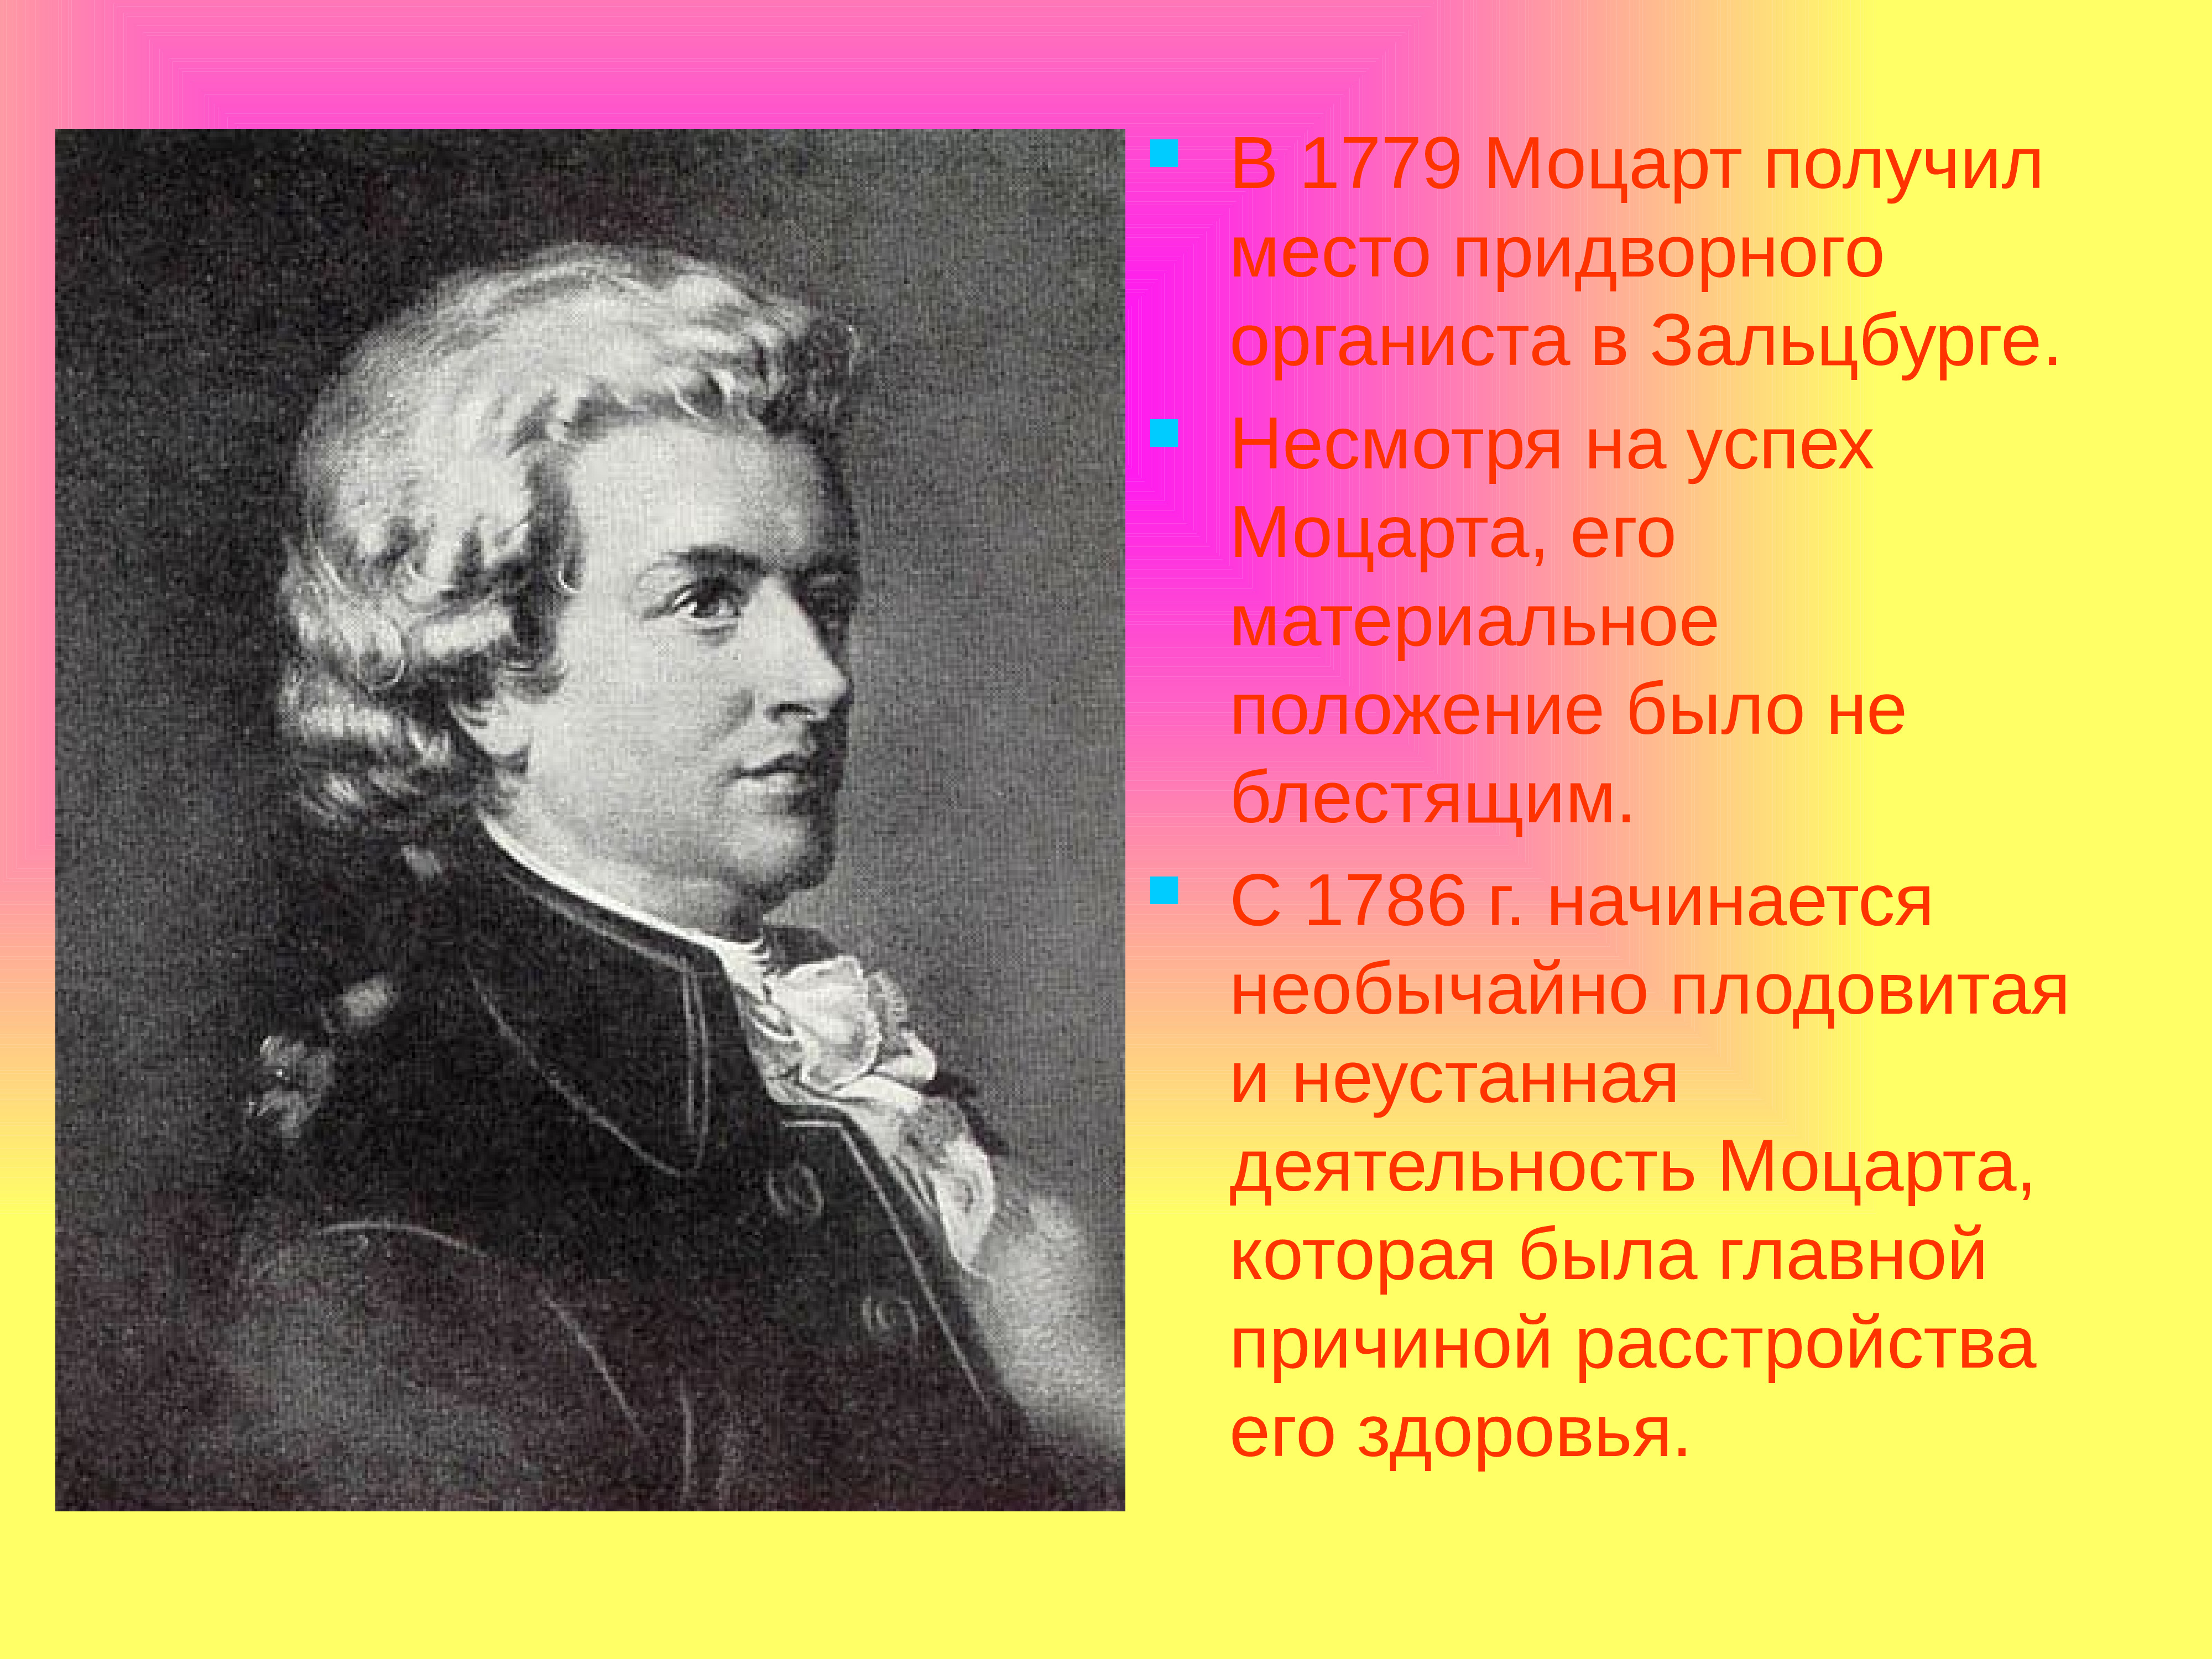 3 факта о моцарте. Моцарт 1779. Жизненный и творческий путь Моцарта. Творческий путь Моцарта. Творчество Моцарта кратко.